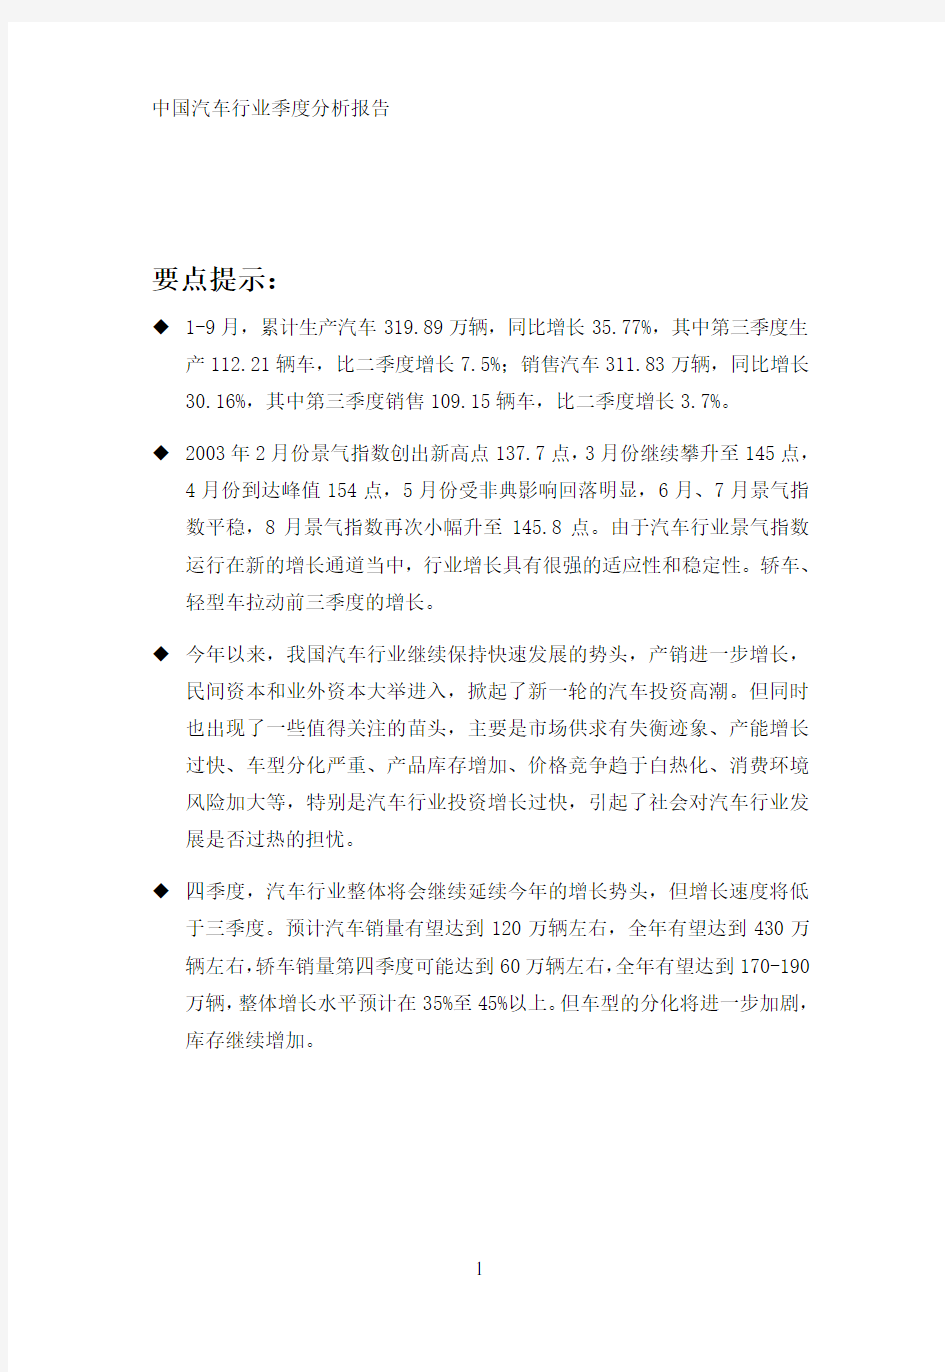 中国汽车行业季度分析报告-Q3(1)